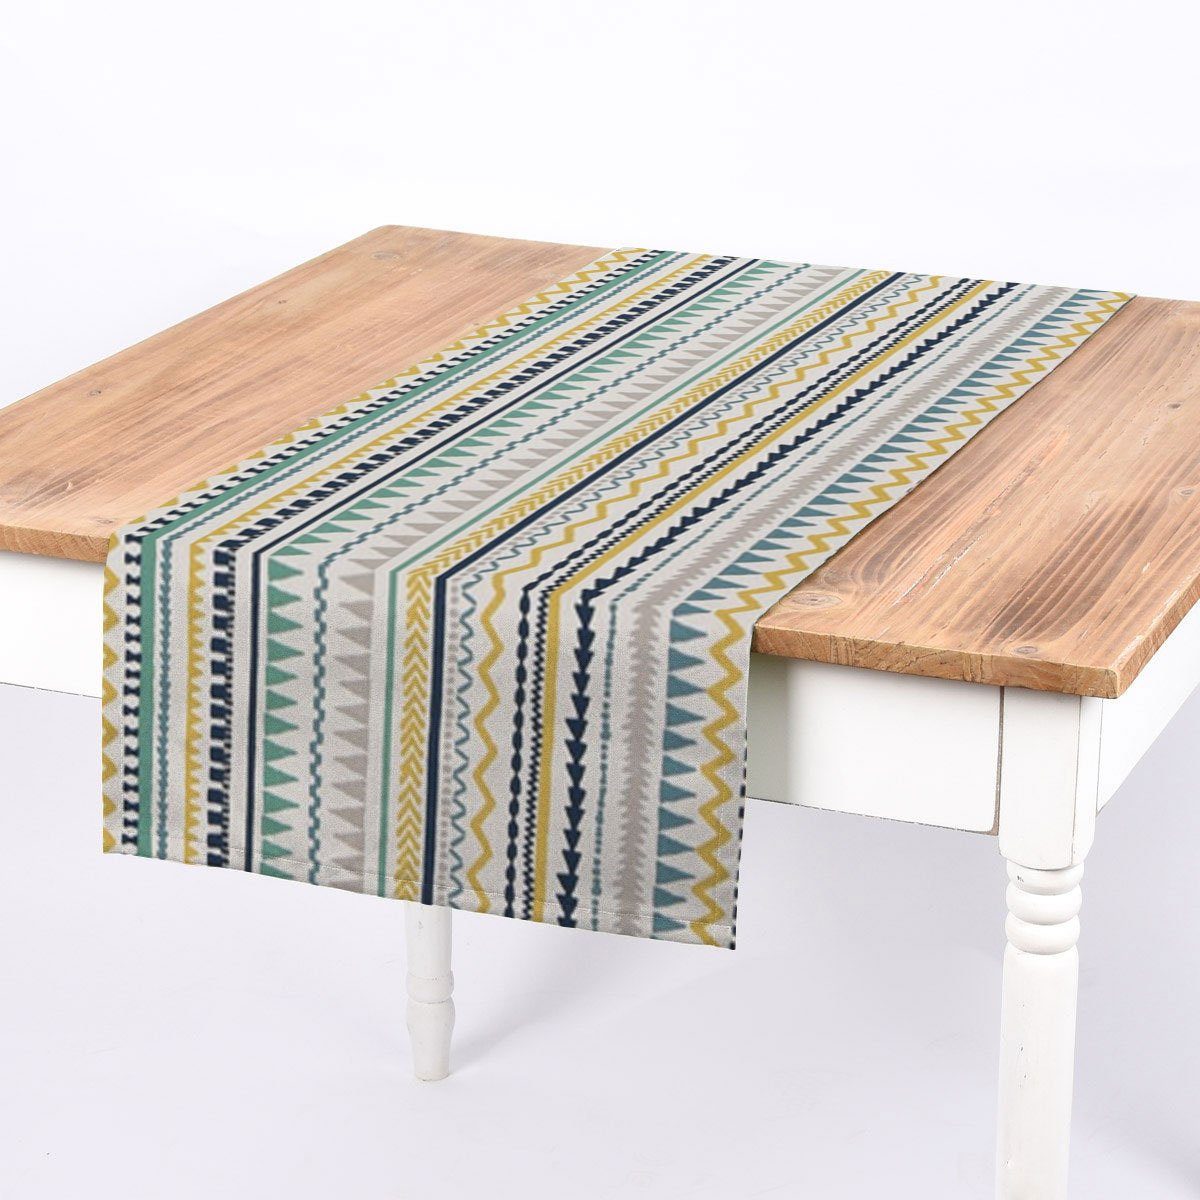 Tischläufer LEBEN. handmade SCHÖNER Tischläufer blau LEBEN. gelb, SCHÖNER Ethno weiß Streifen Inka grau